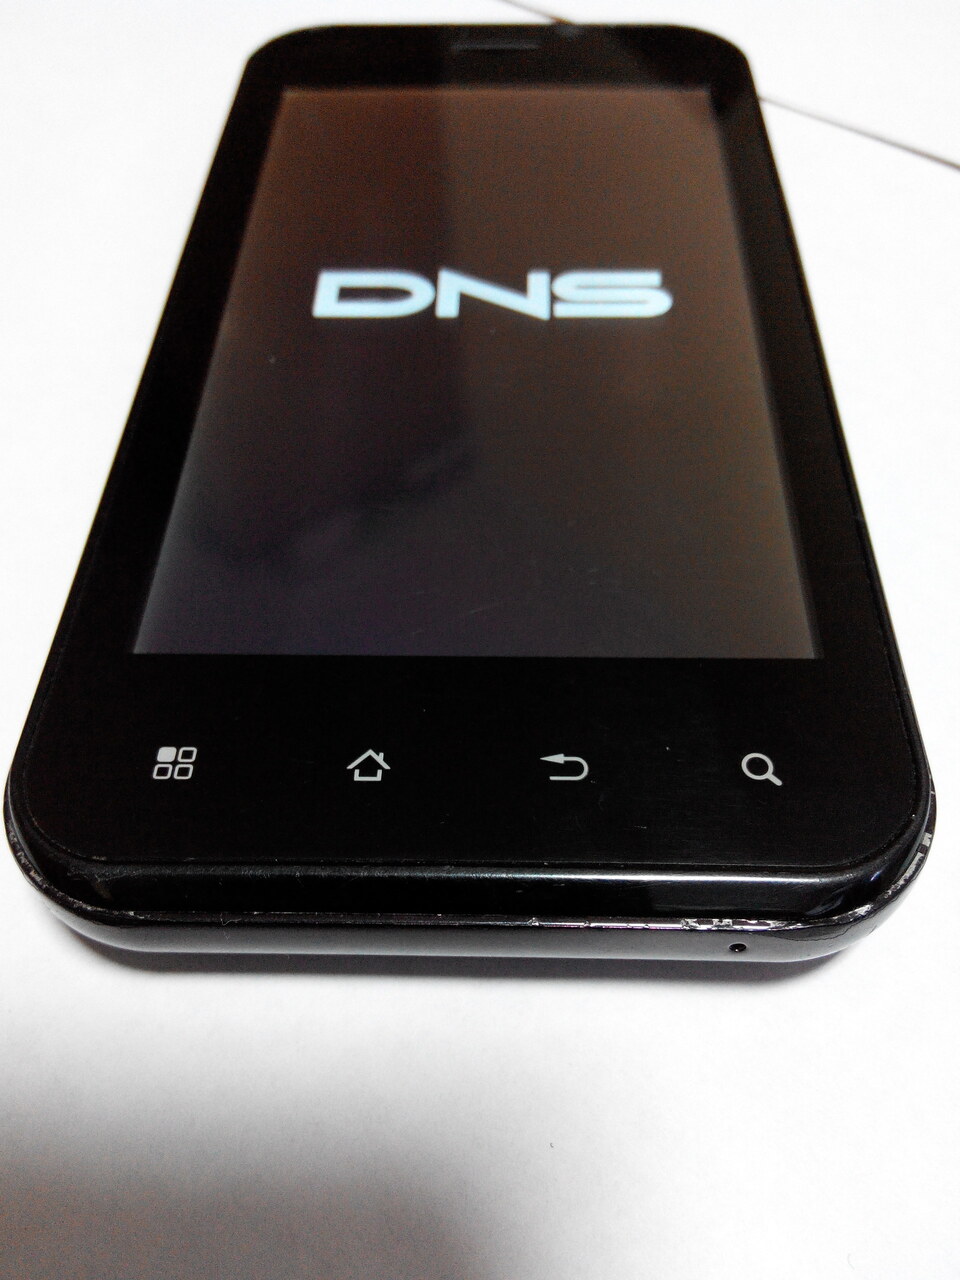 Хорошие телефоны в днс. Смартфон DNS s4004m. ДНС телефон 2015. Смартфон от DNS. Телефон DNS m1.